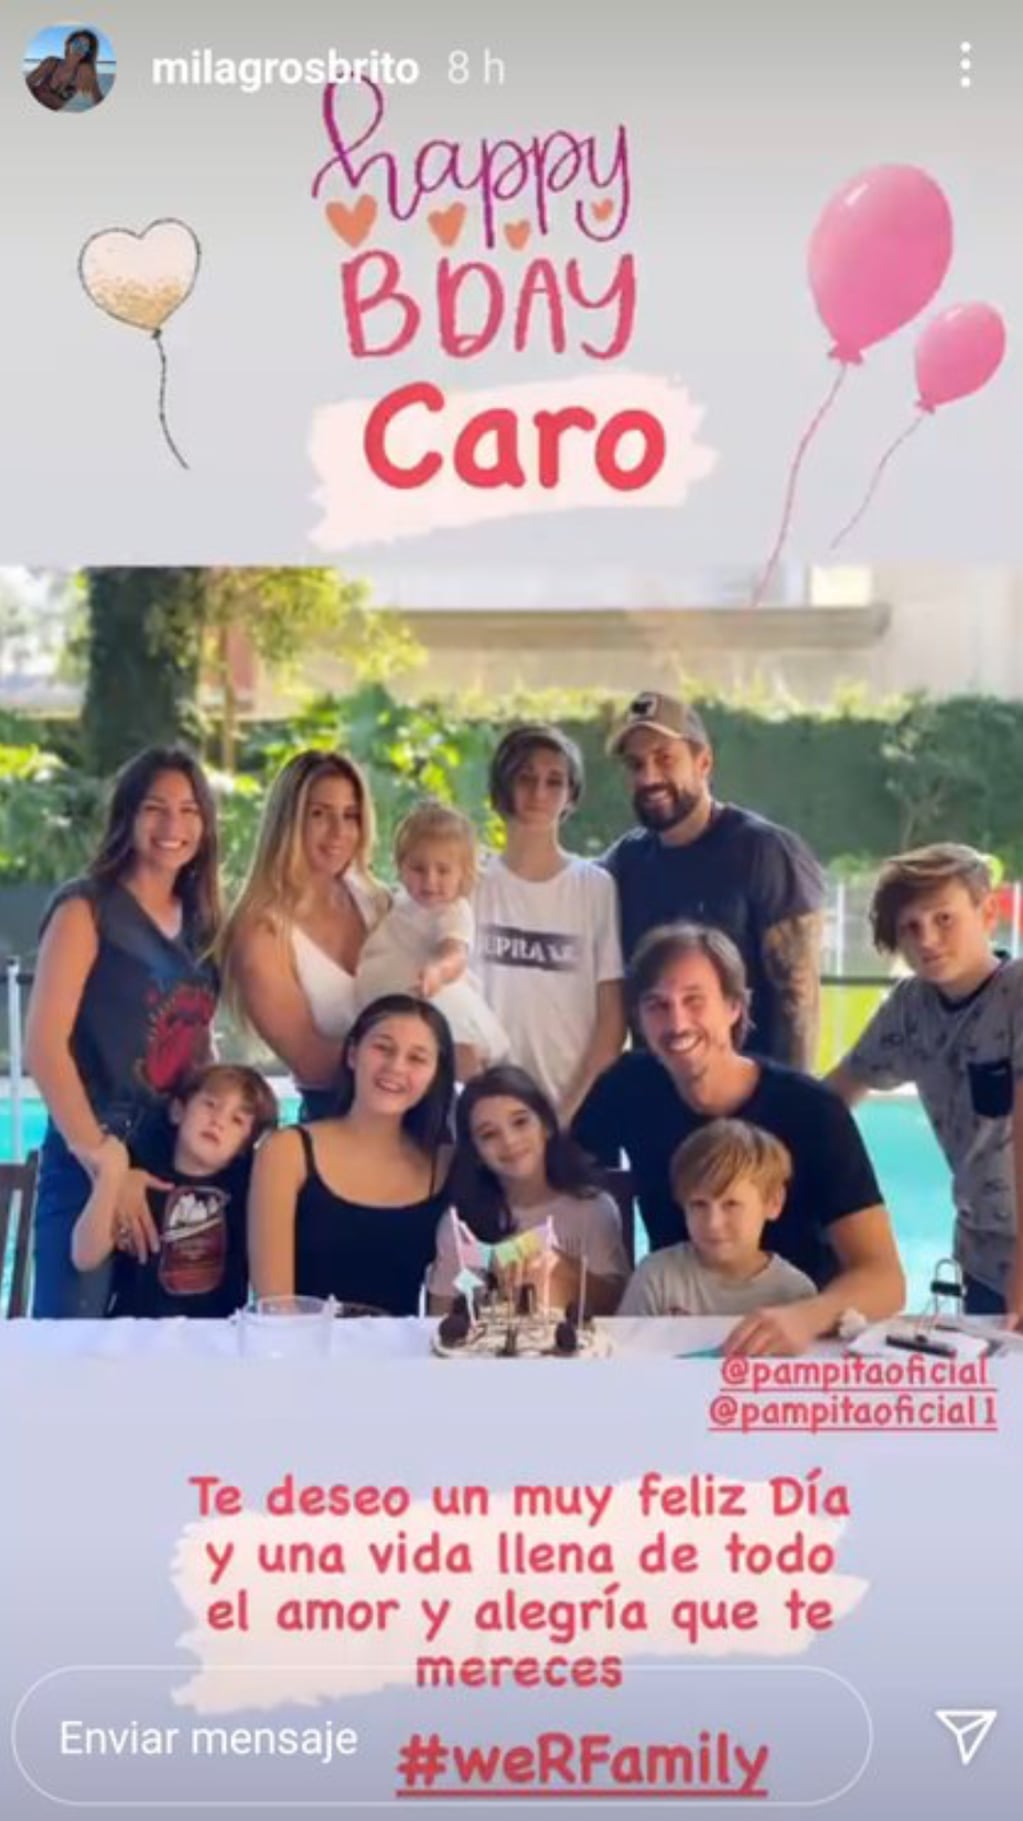 Pampita y Milagros con Francesca (2) en brazos y su pareja Agustín Garavaglia, Asia (9) y los hijos de la modelo, Bautista, Beltrán y Benicio.